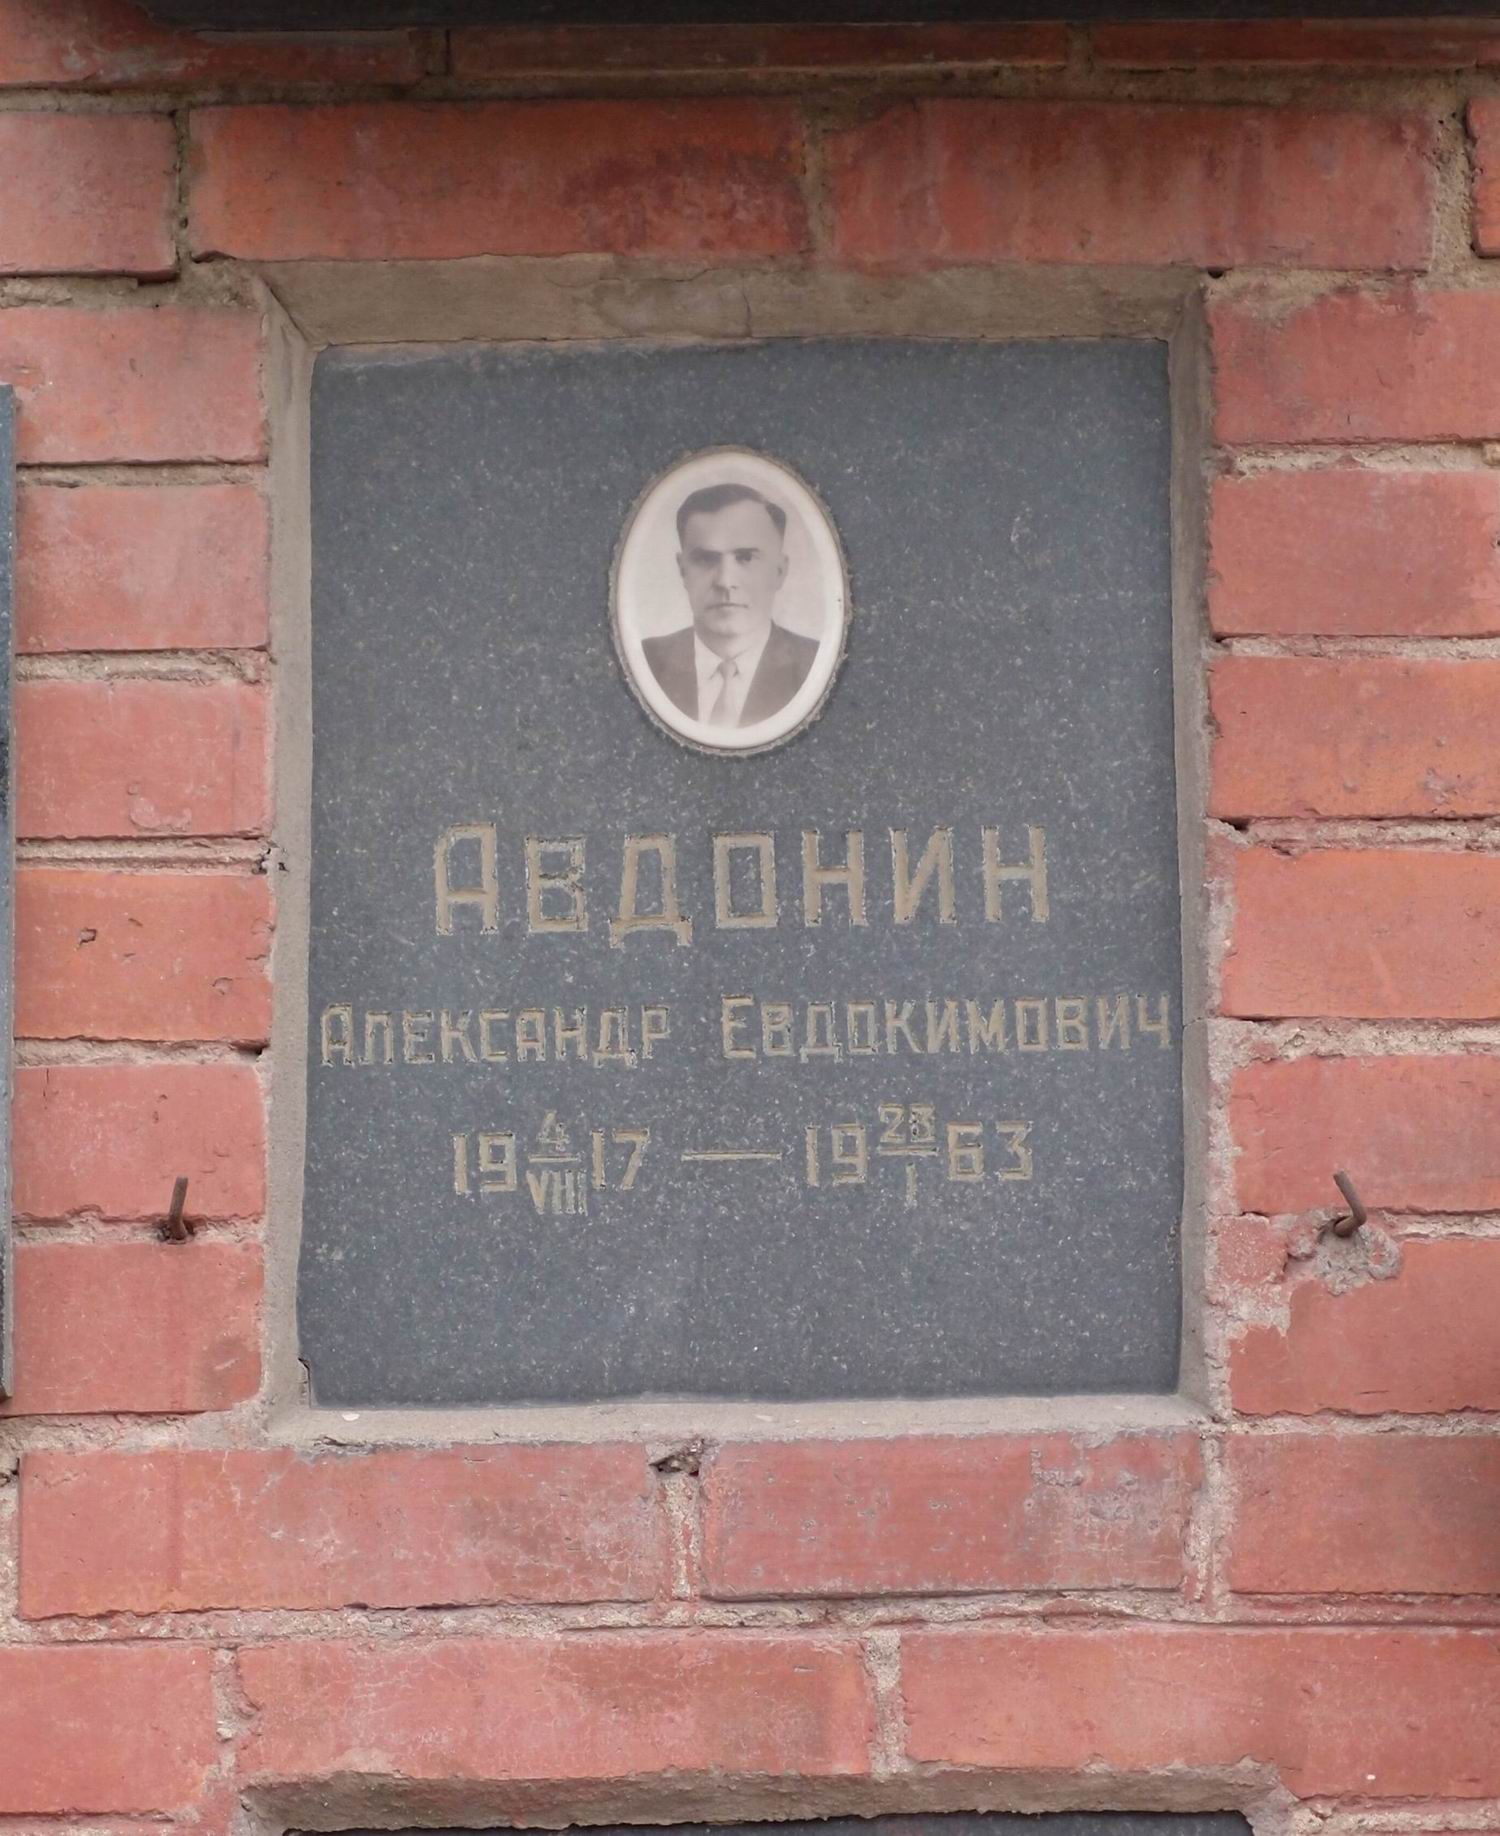 Плита на нише Авдонина А.Е. (1917-1963), на Новодевичьем кладбище (колумбарий [116]-7-2).